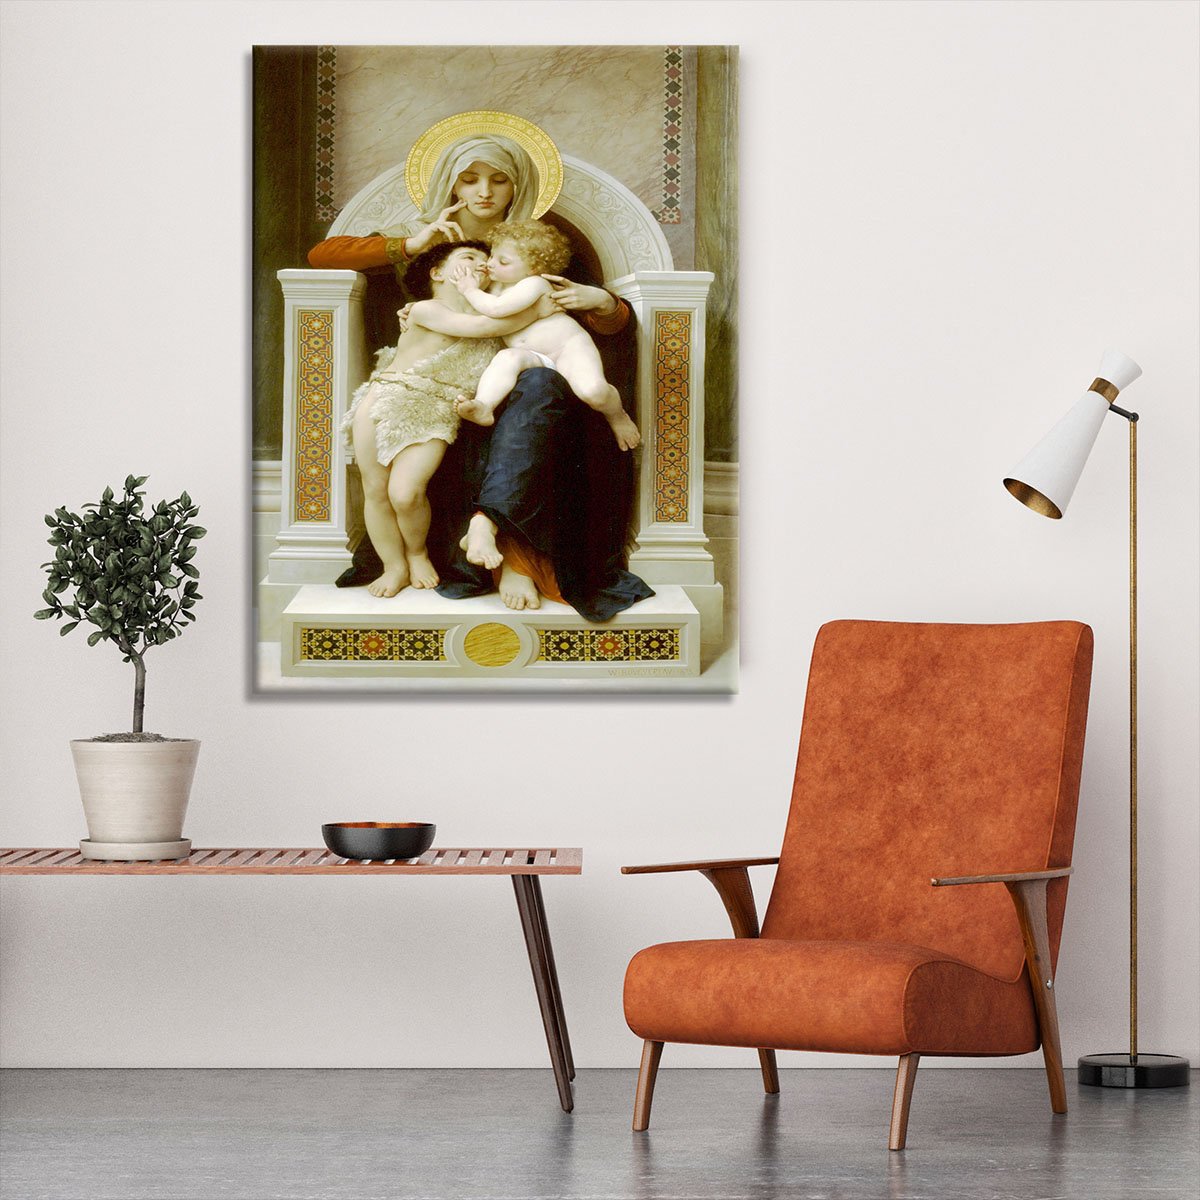 Vierge-Jesus SaintJeanBaptiste 1875 By Bouguereau Canvas Print or Poster